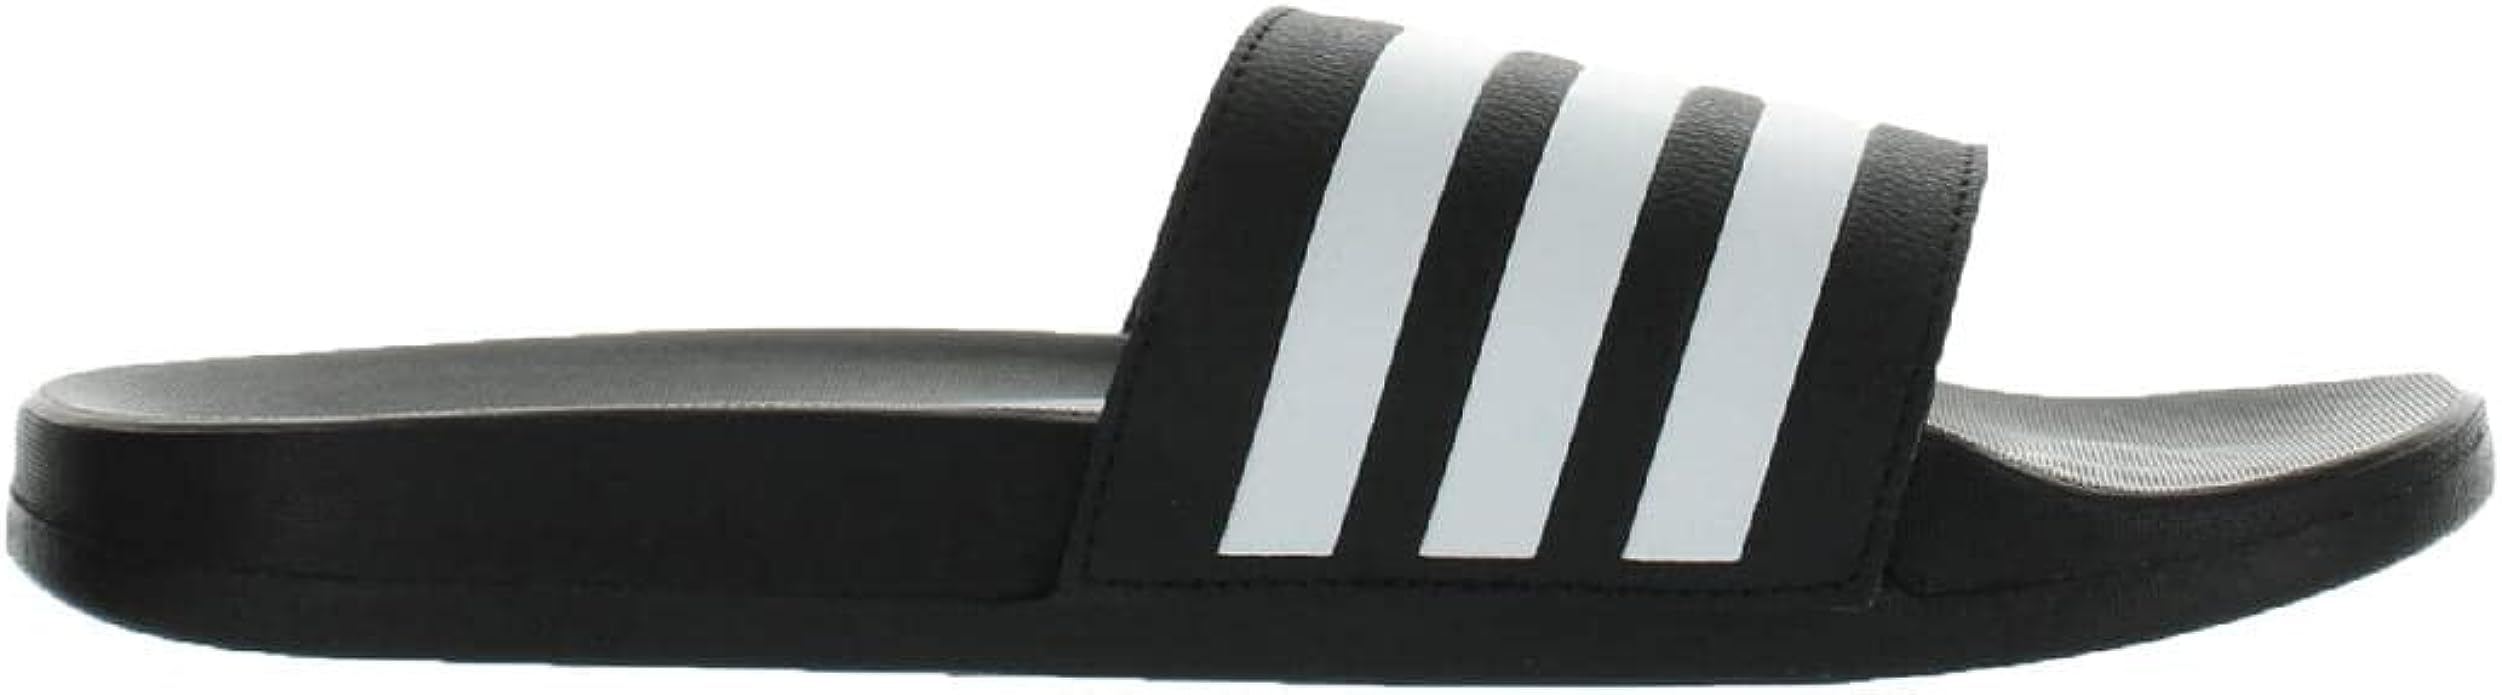 Adidas Unisex Adilette Comfort Adjustable Slides